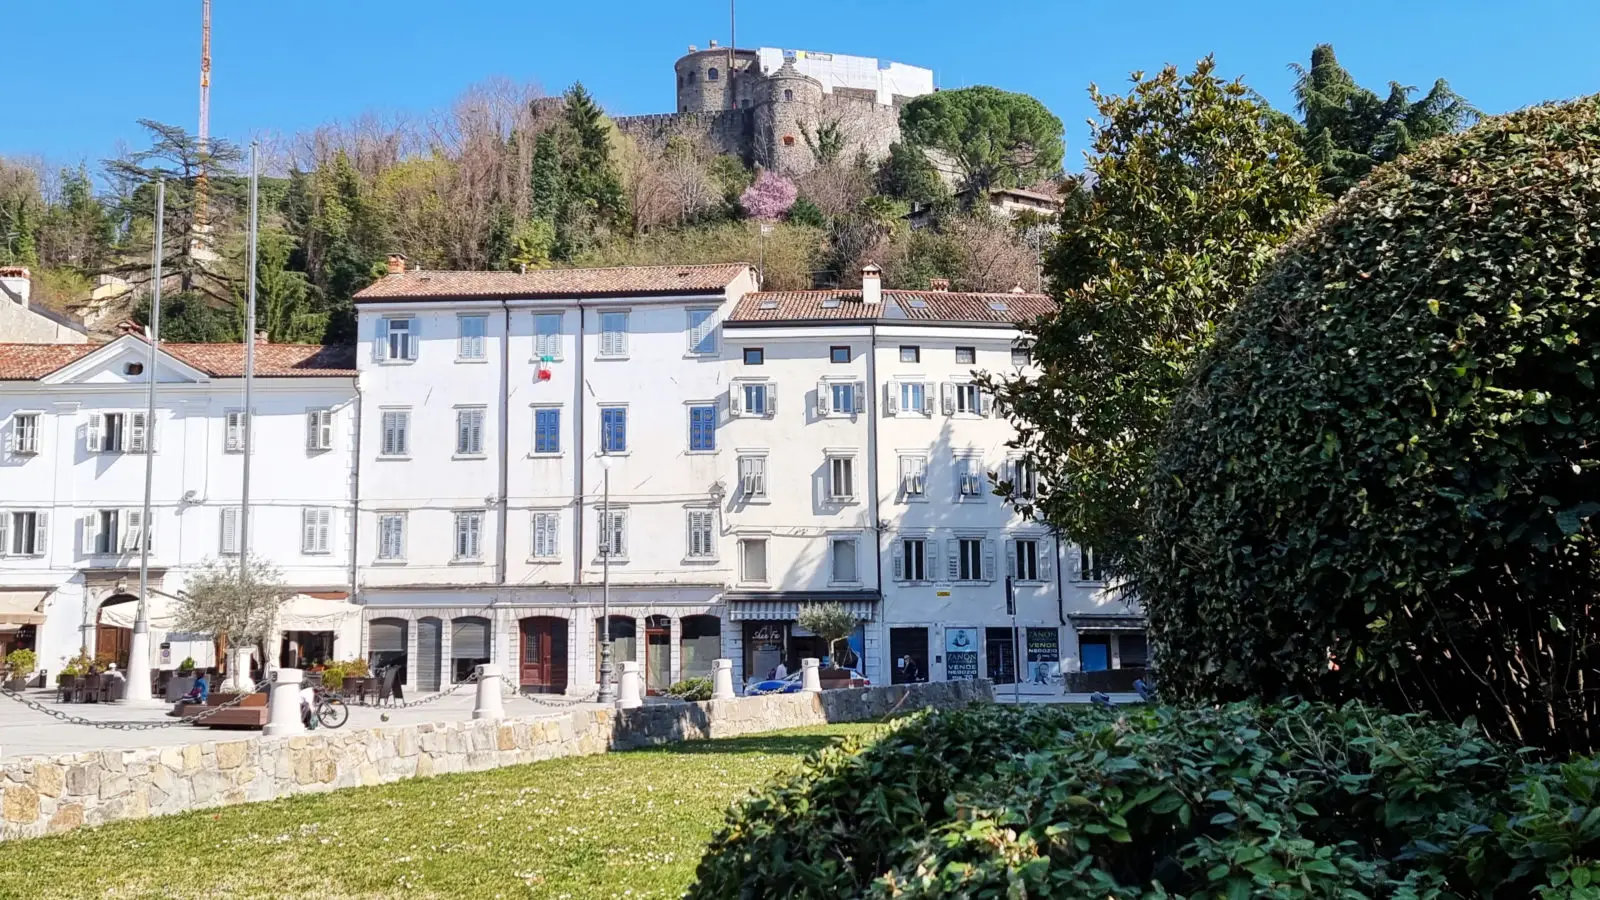 Sehenswürdigkeiten von Goricia - Castello di Goricia 